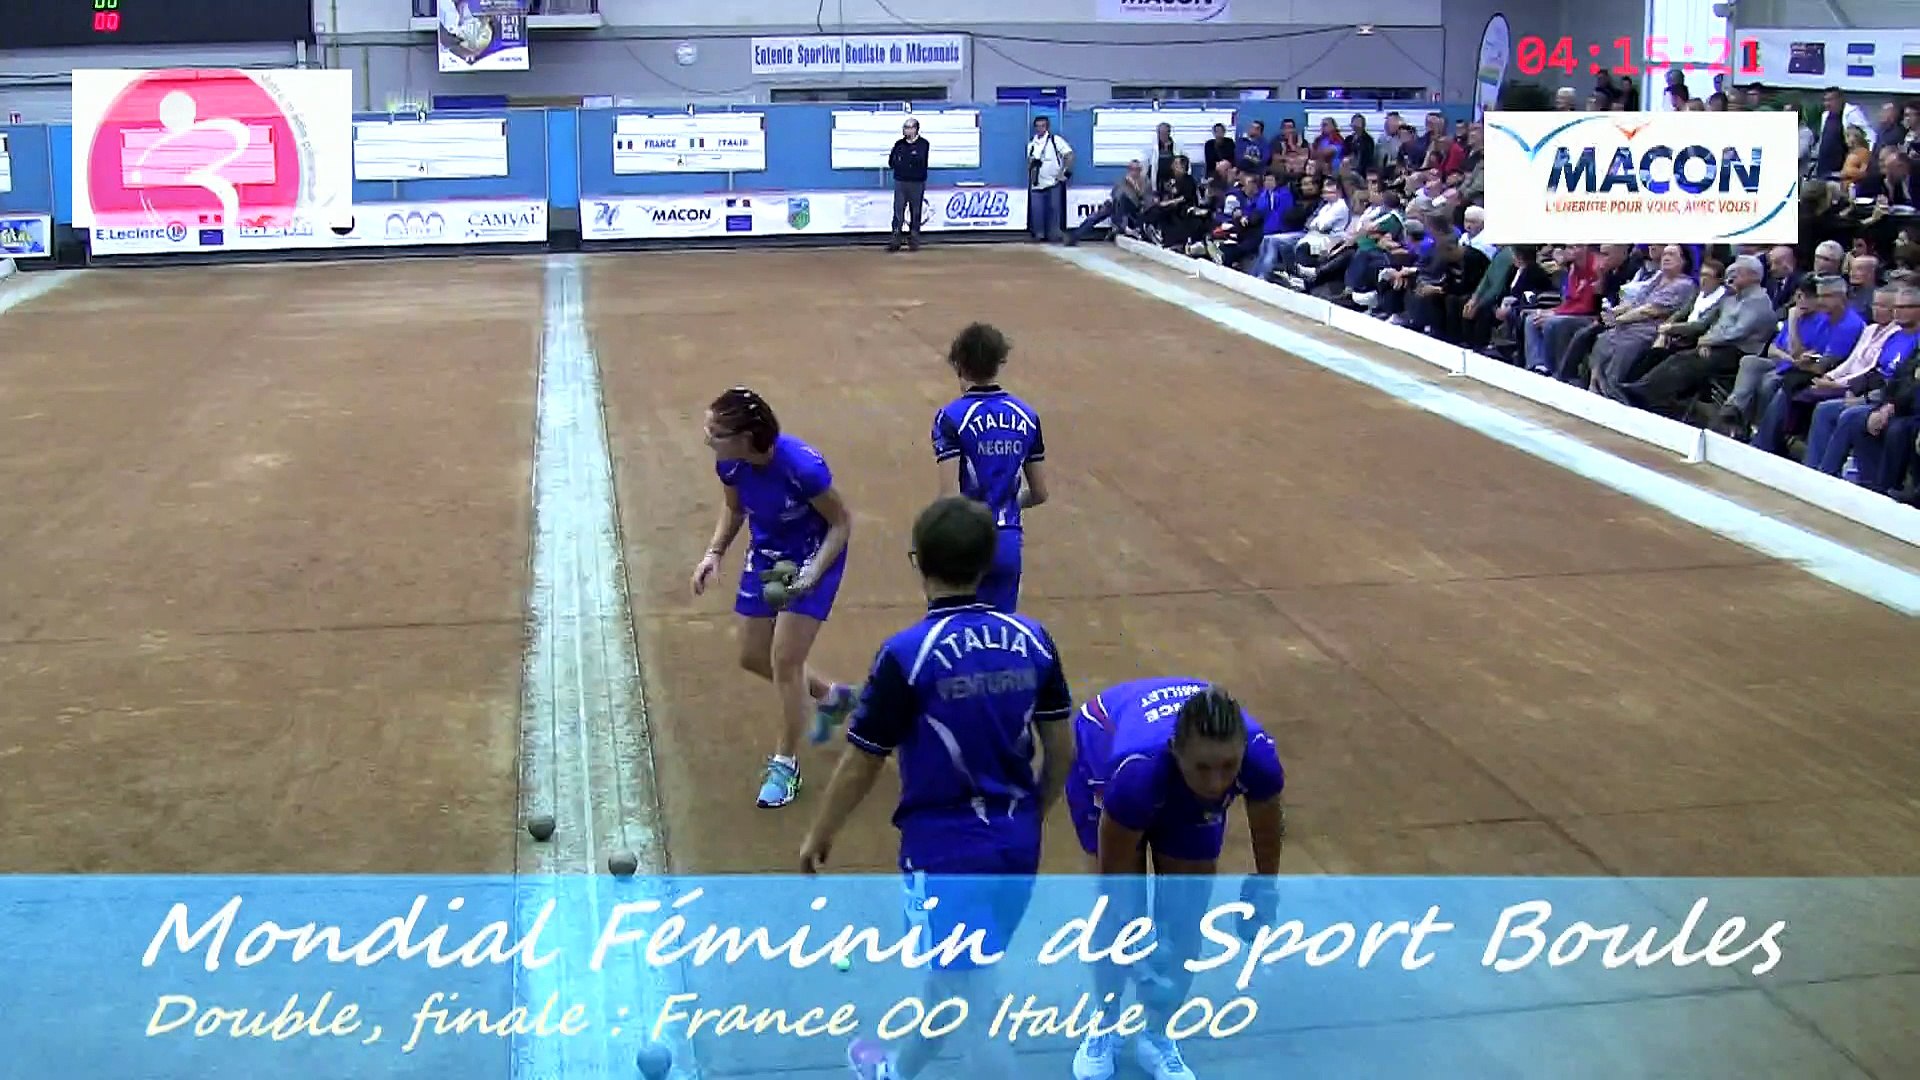 Finale double, France contre Italie, Championnat du Monde Féminin de Sport  Boules, Mâcon 2014 - Vidéo Dailymotion